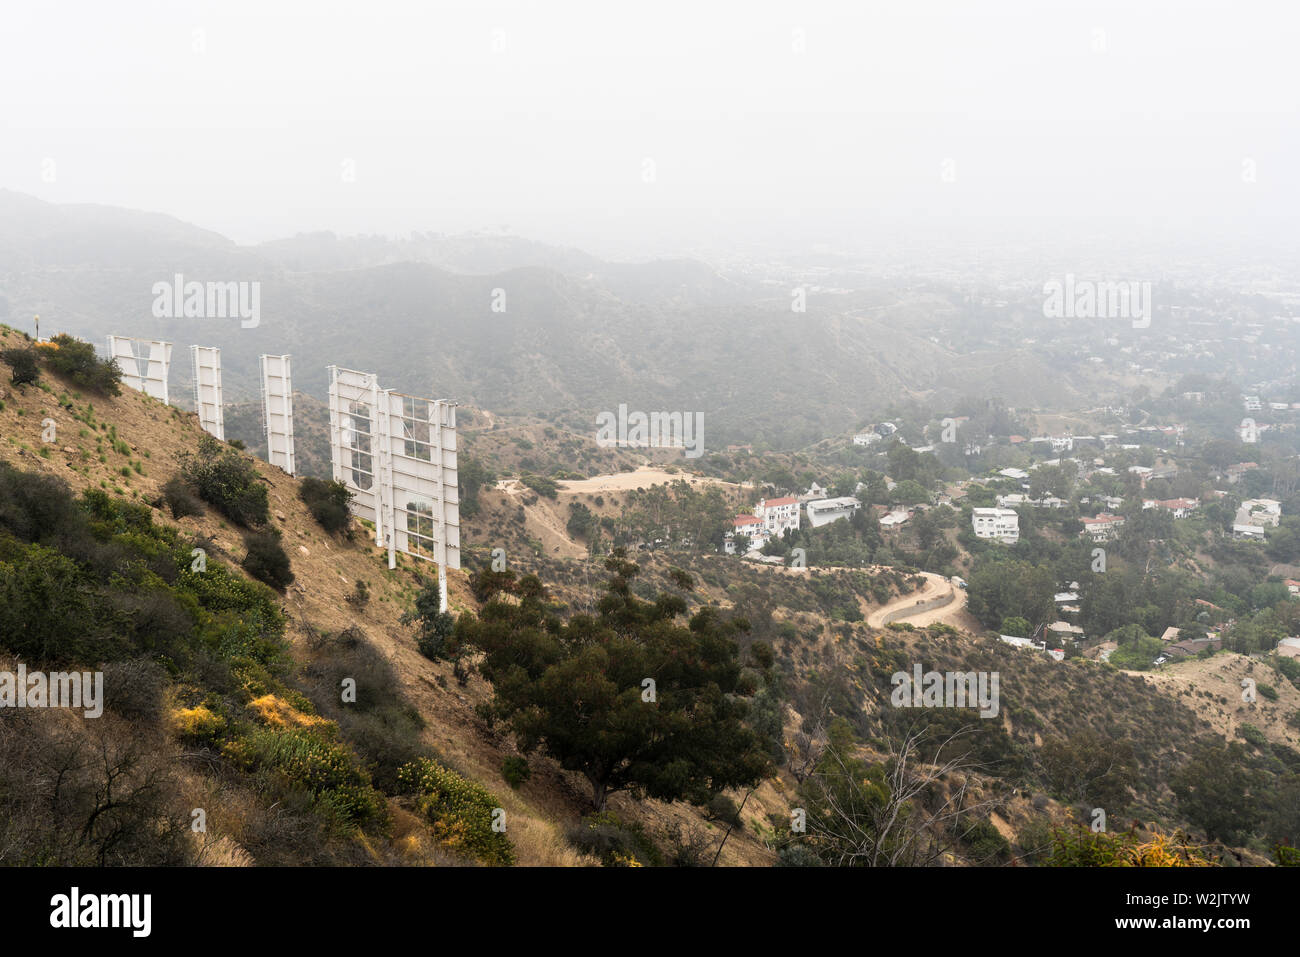 Los Angeles, California, Stati Uniti d'America - Luglio 7, 2019: mattinata nebbiosa vista la famosa insegna di Hollywood e hillside case popolari vicino a Griffith Park. Foto Stock